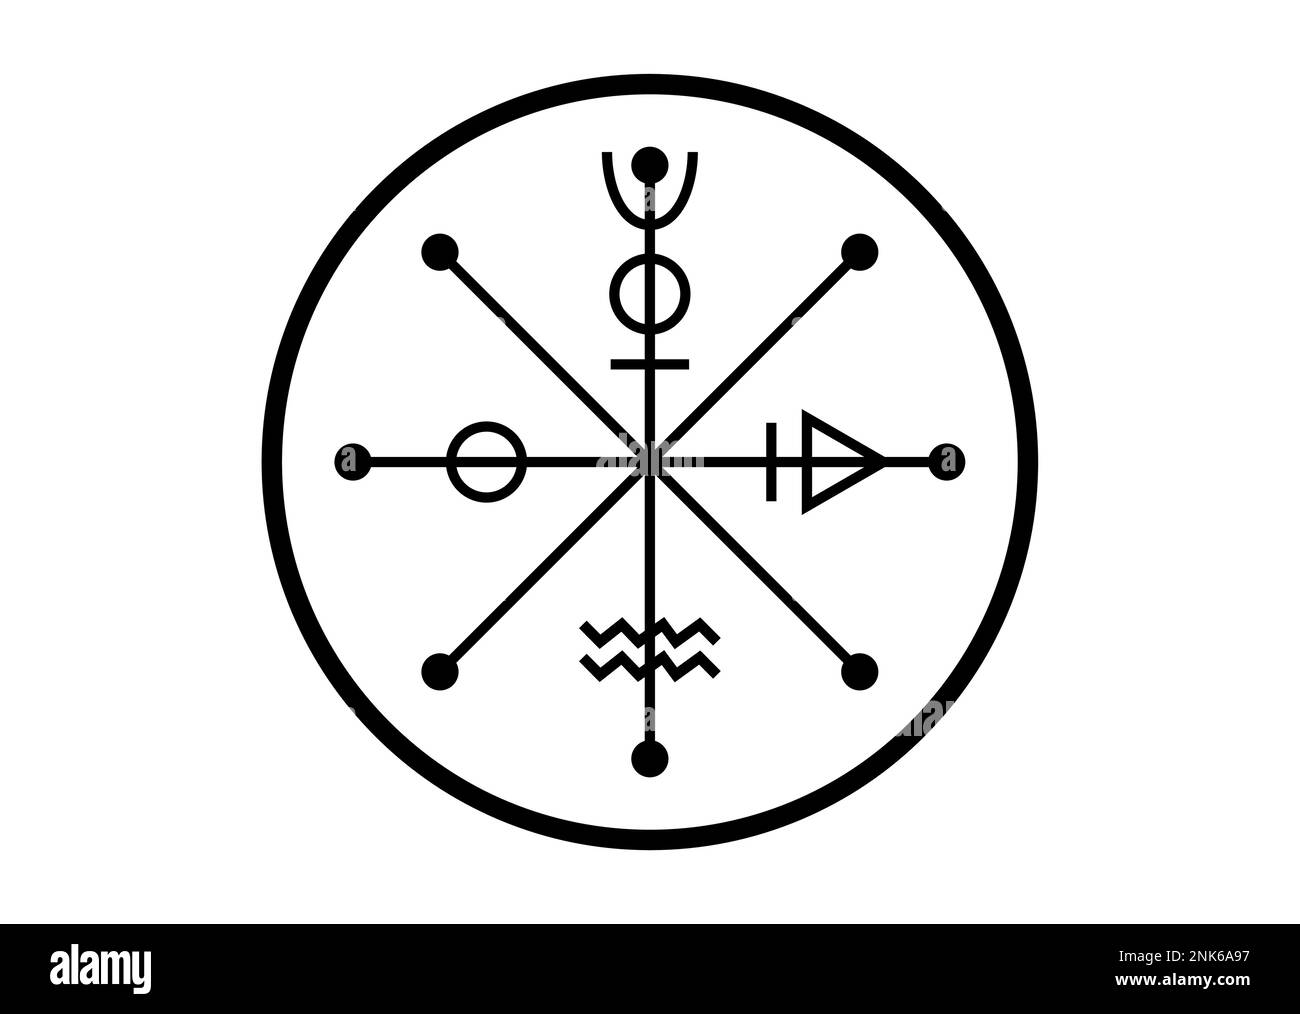 Le symbole de la roue de Fotune tarot, le signe de l'Antiquité mondiale, le cycle de vie, le charme de la magie talisman de sorcière, l'icône de tatouage noir de la géométrie sacrée Illustration de Vecteur